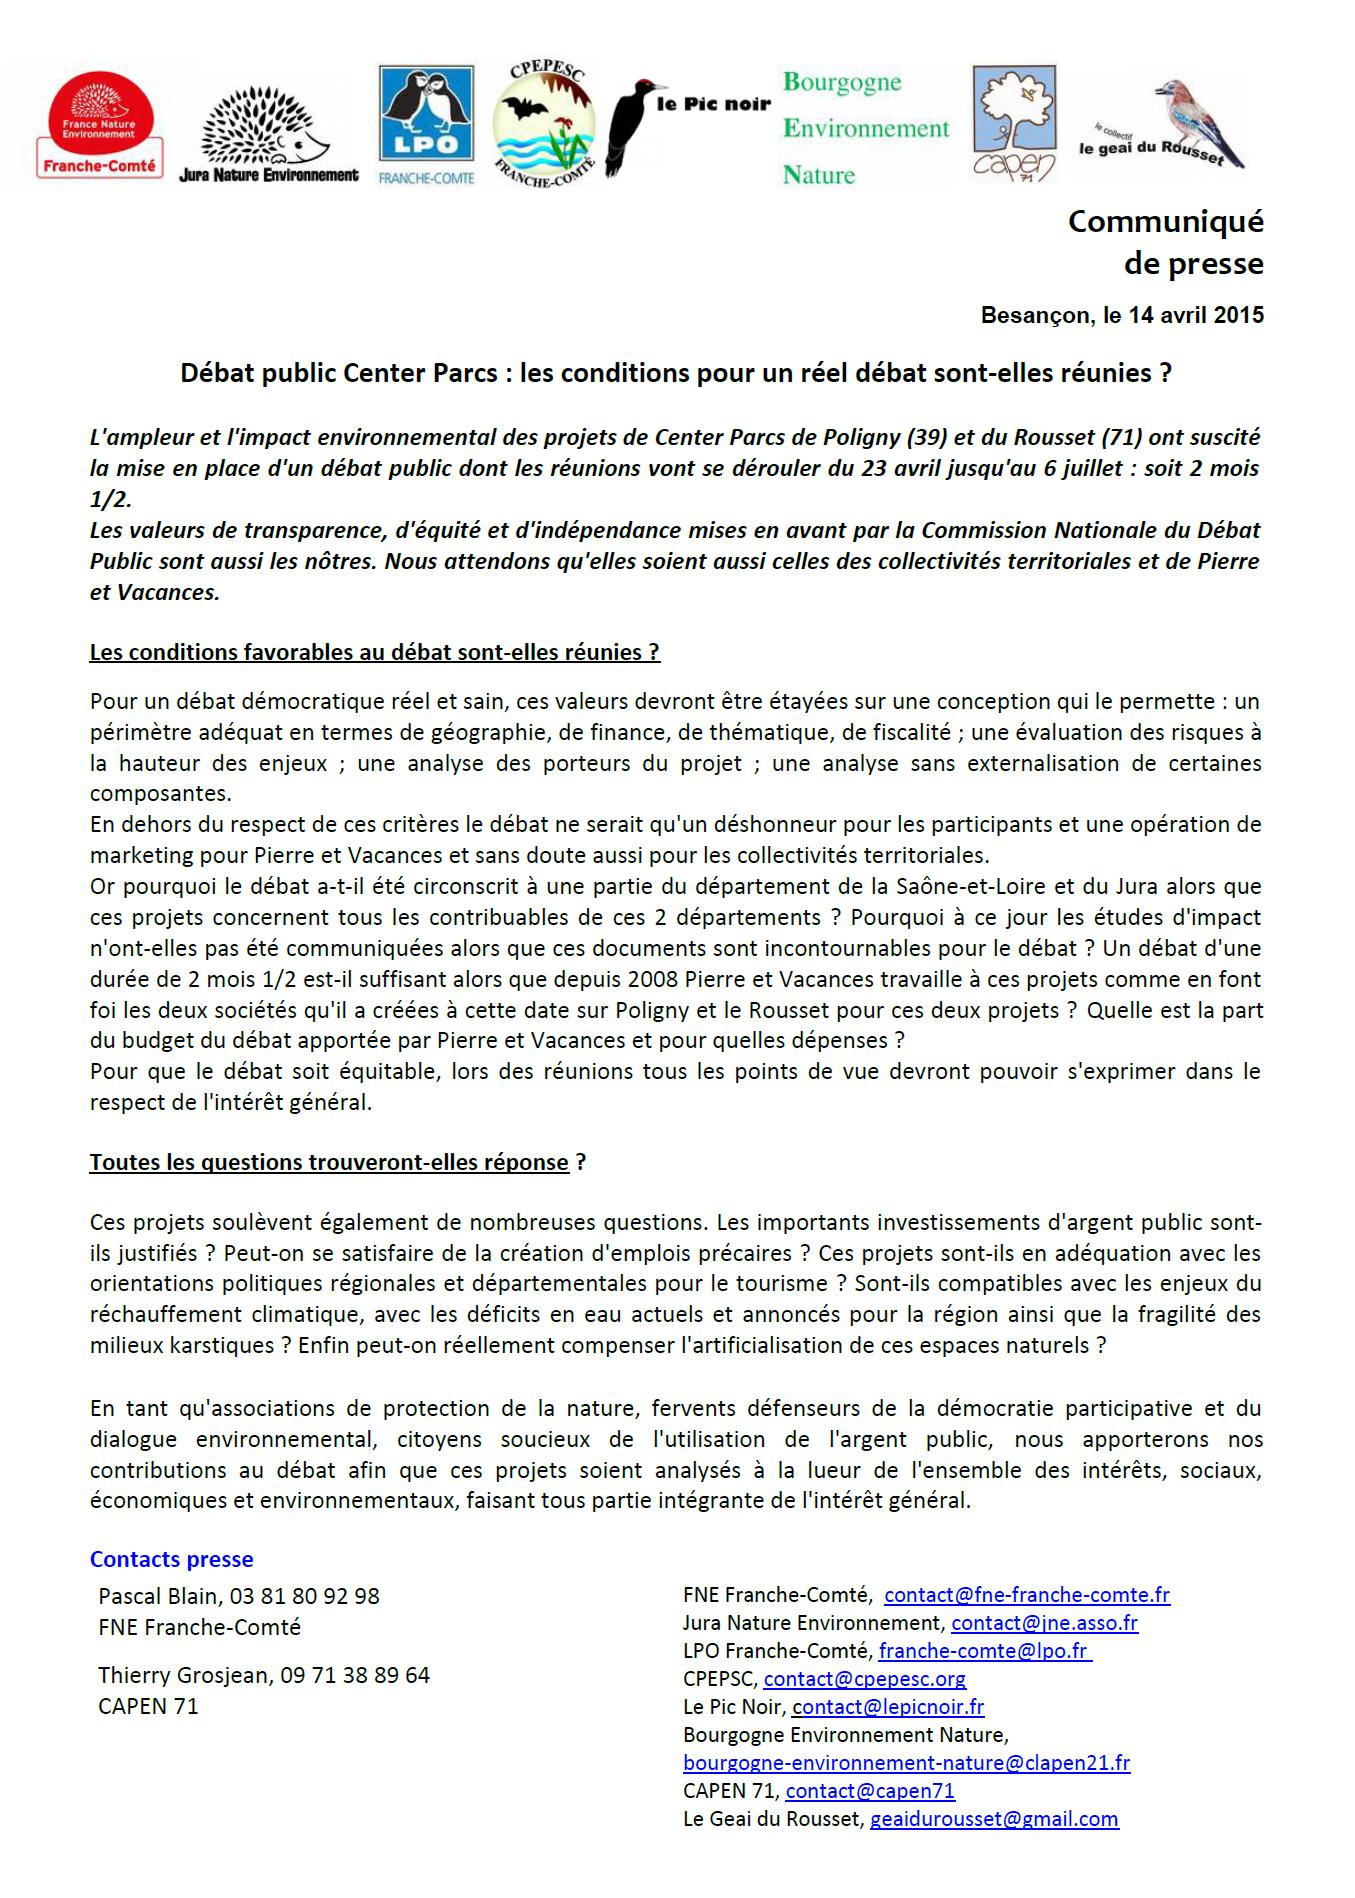 Communiqué de presse des APN Bourgogne et Franche-Comté – Débat public Centerparcs